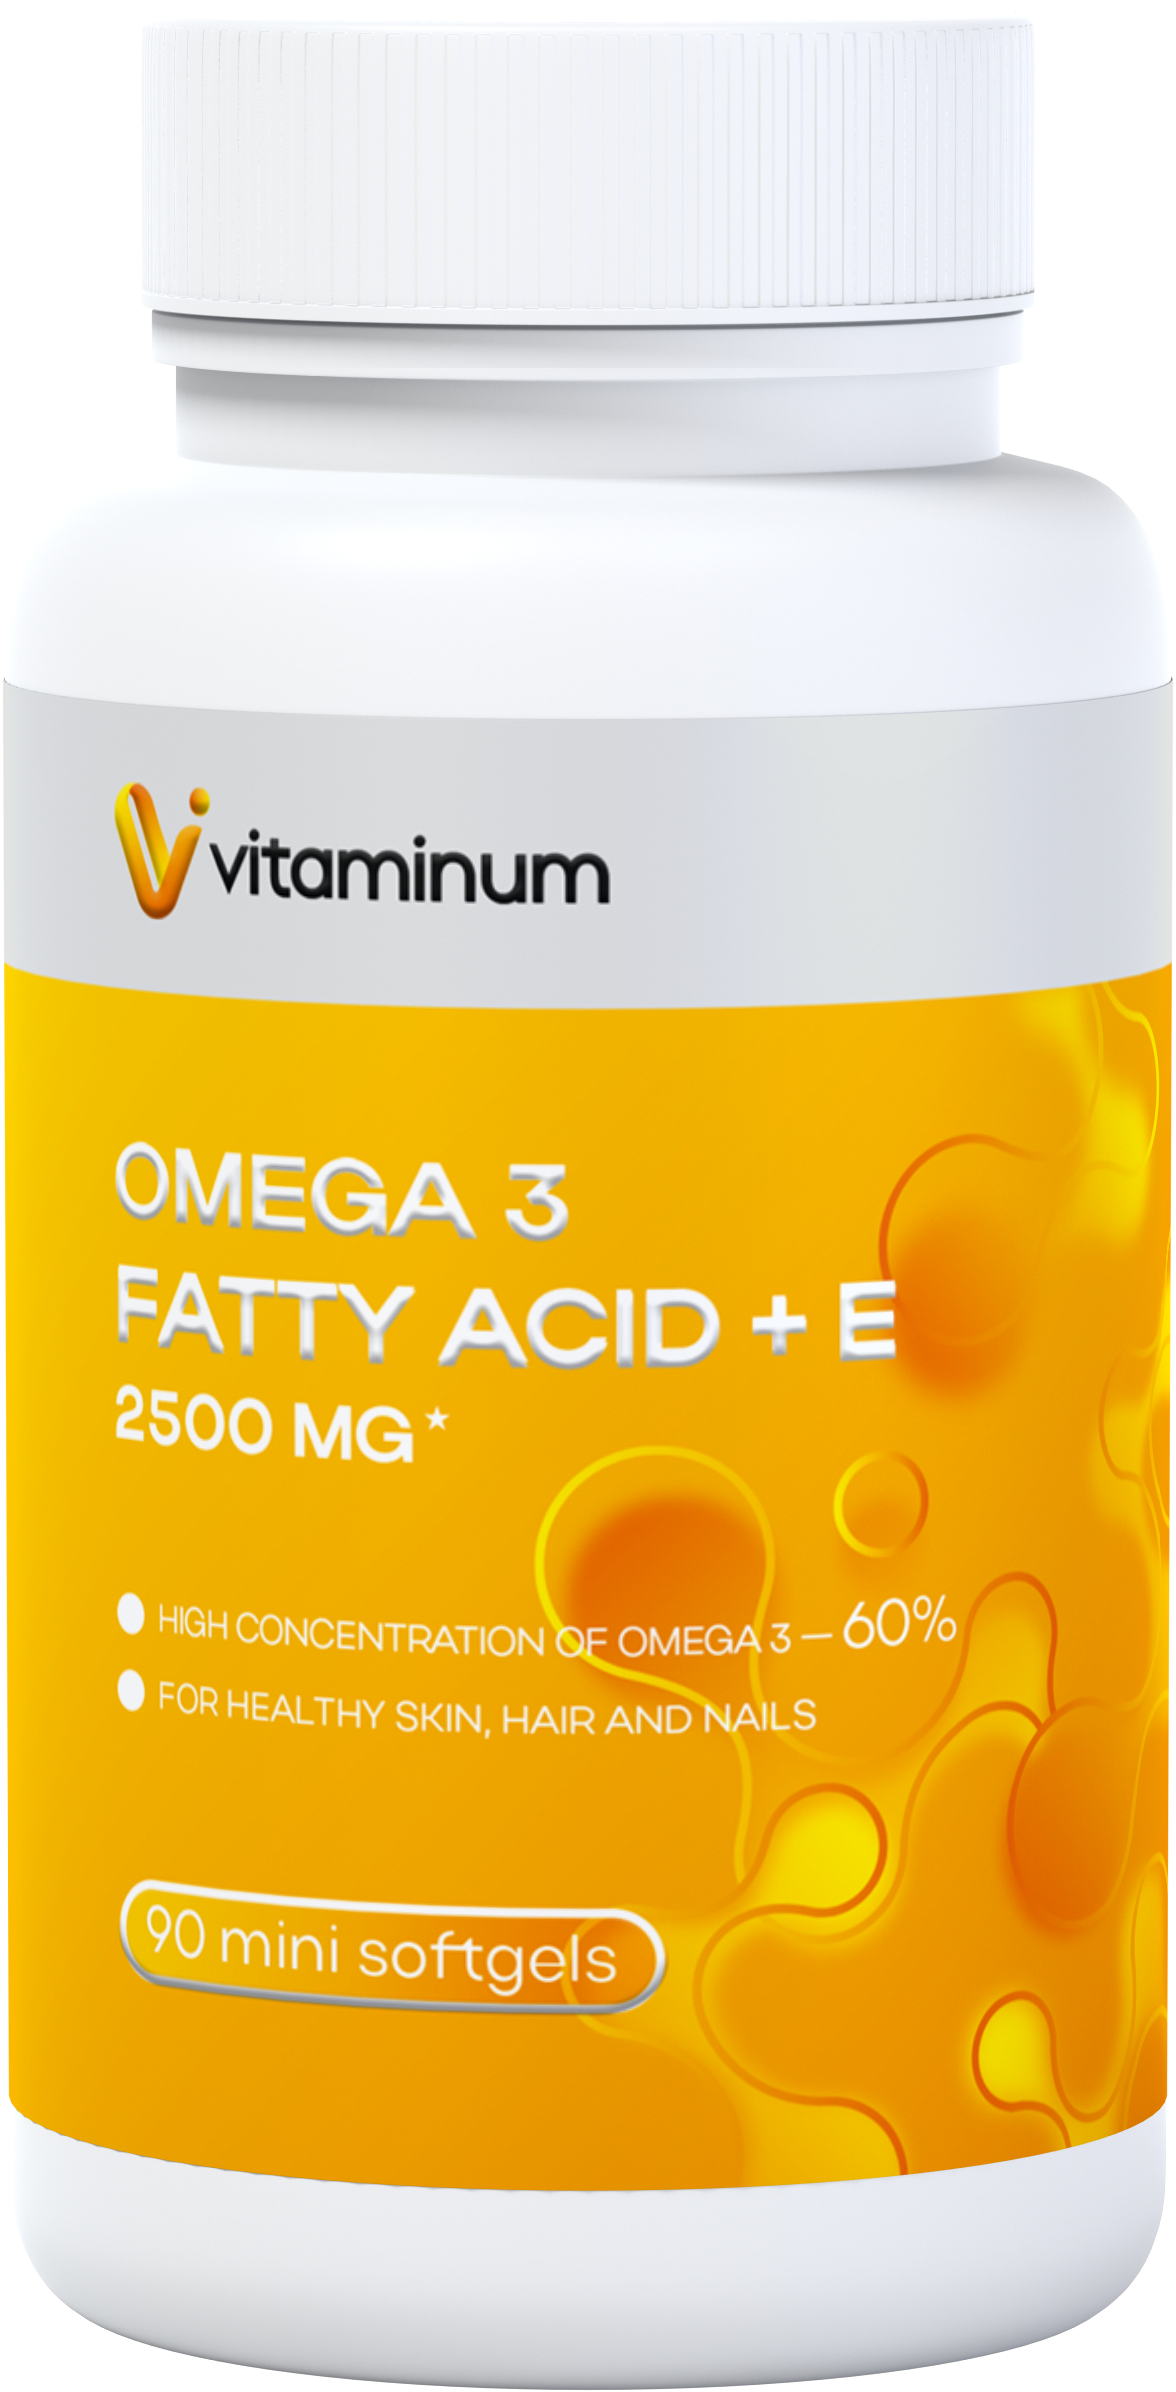  Vitaminum ОМЕГА 3 60% + витамин Е (2500 MG*) 90 капсул 700 мг   в Хабаровске